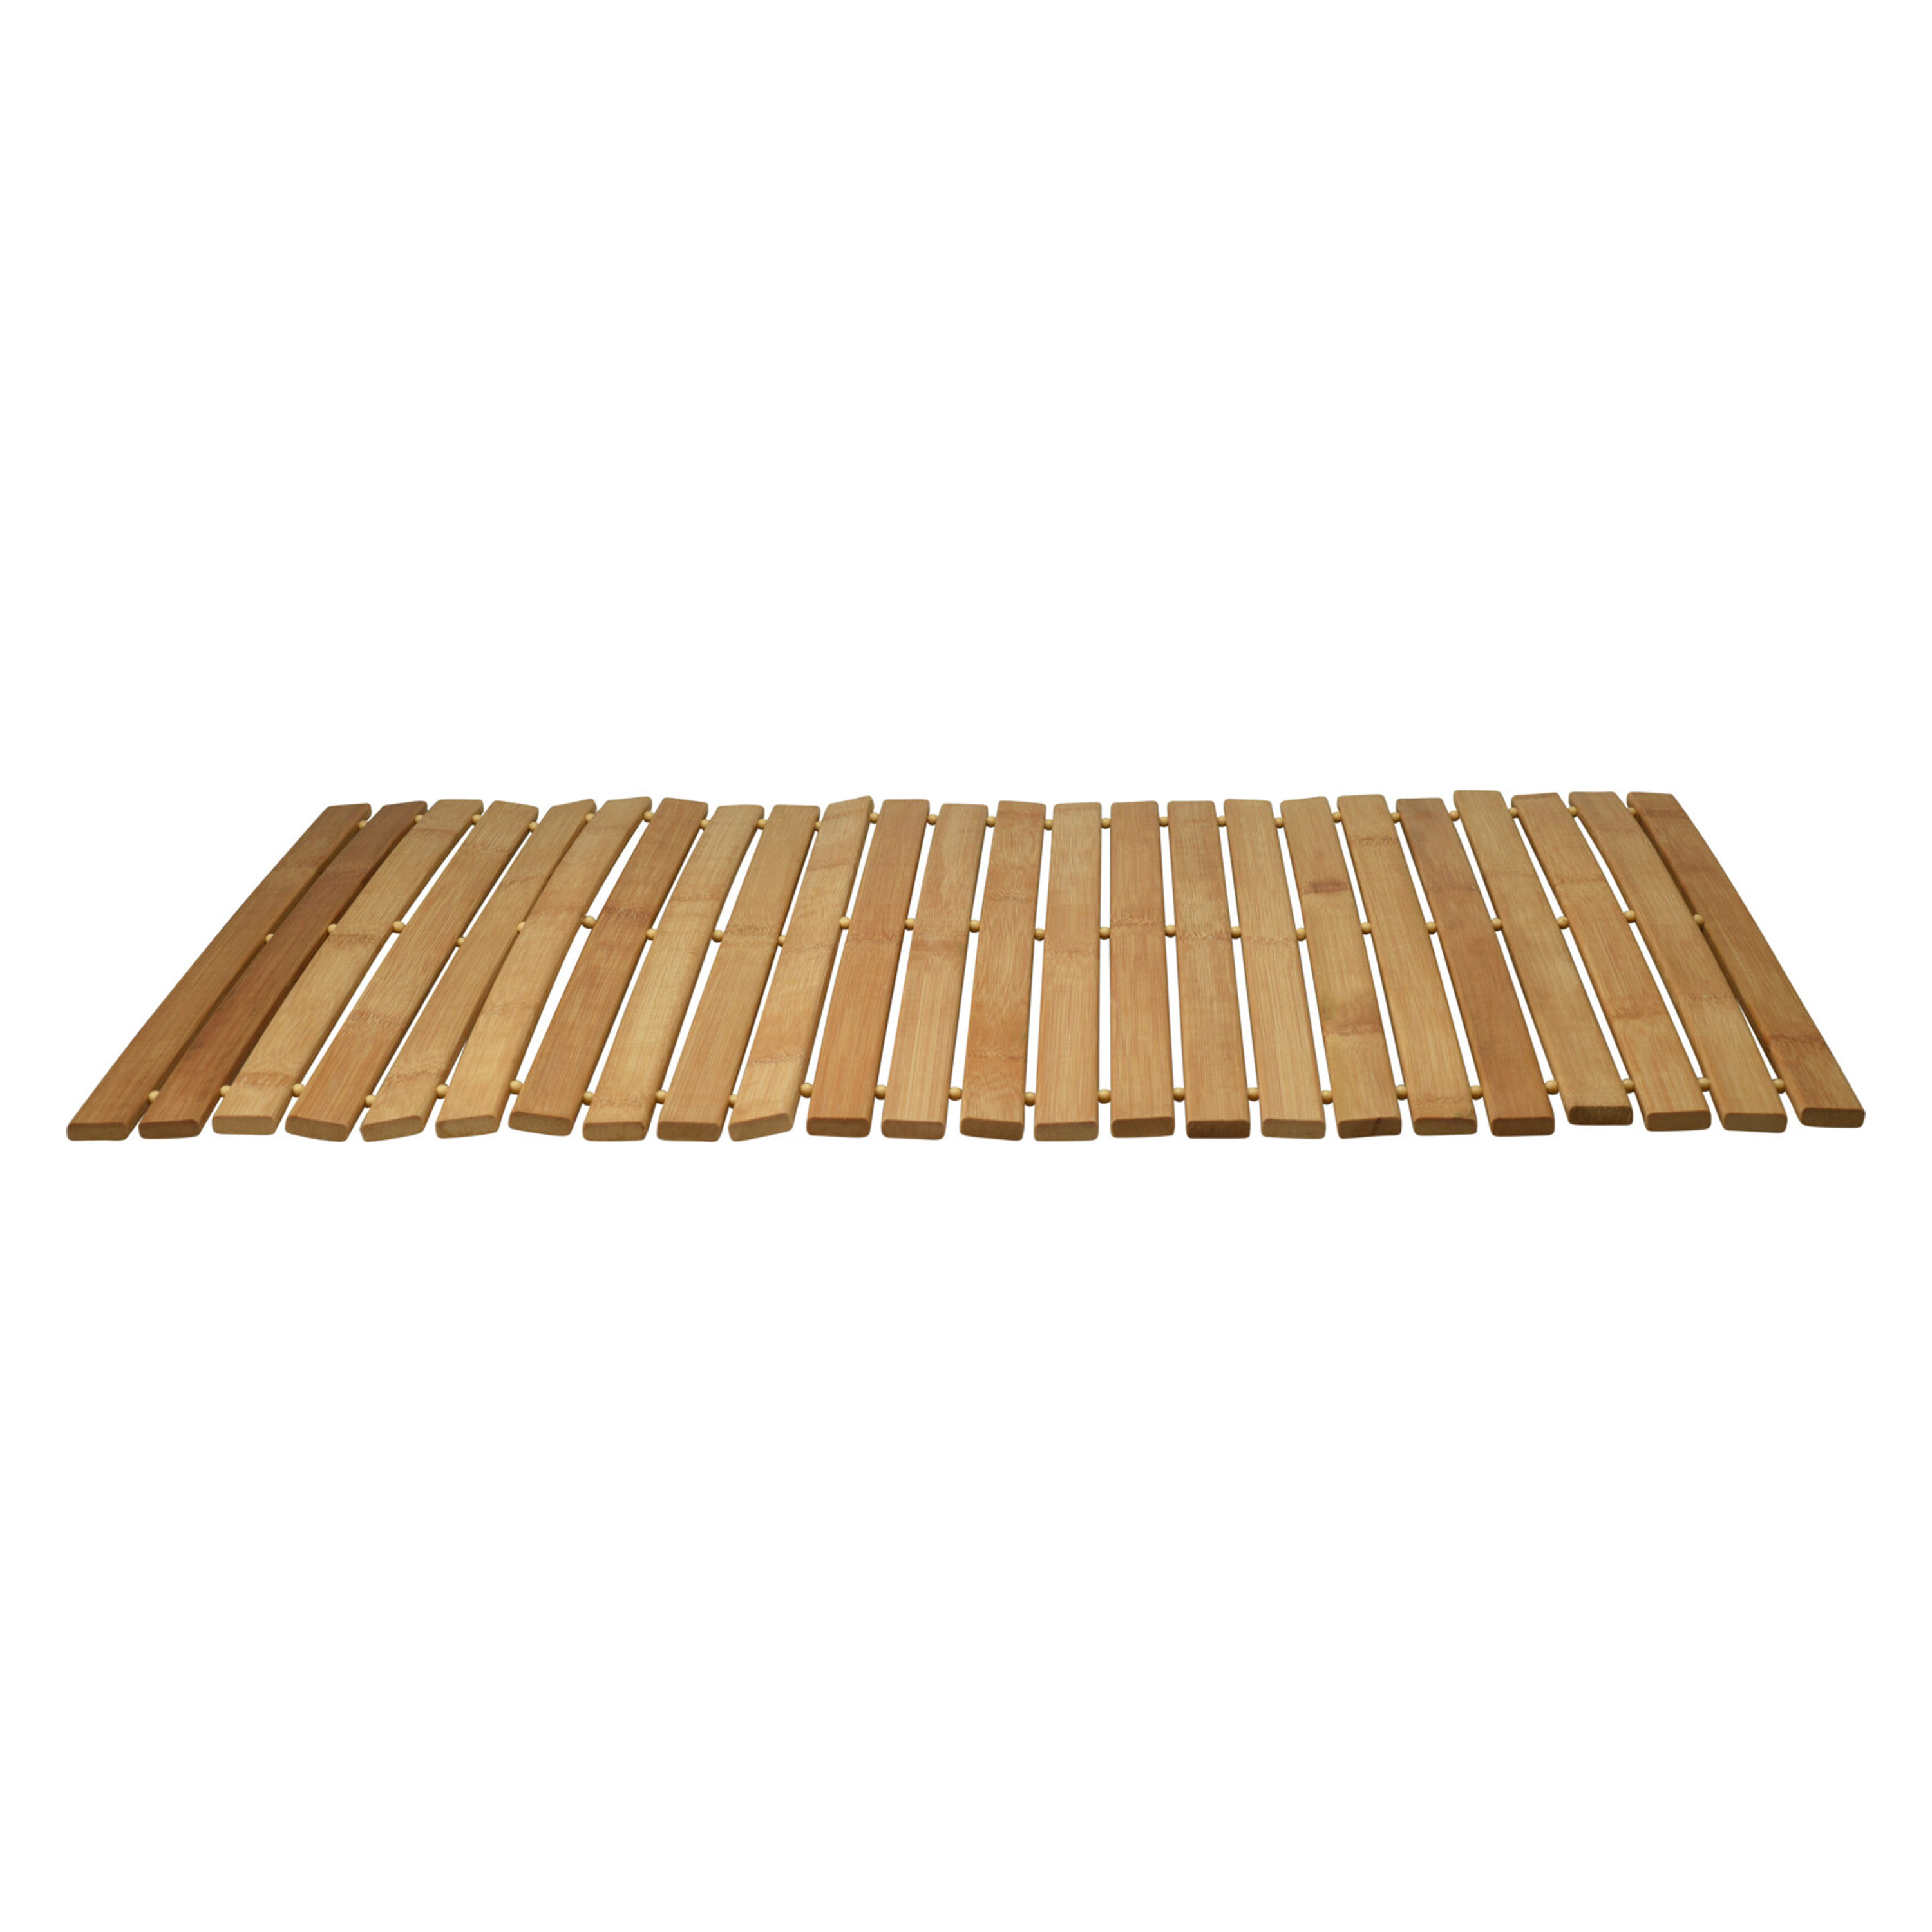 Badkamer-douche-bad mat bamboe hout 40 x 60 cm